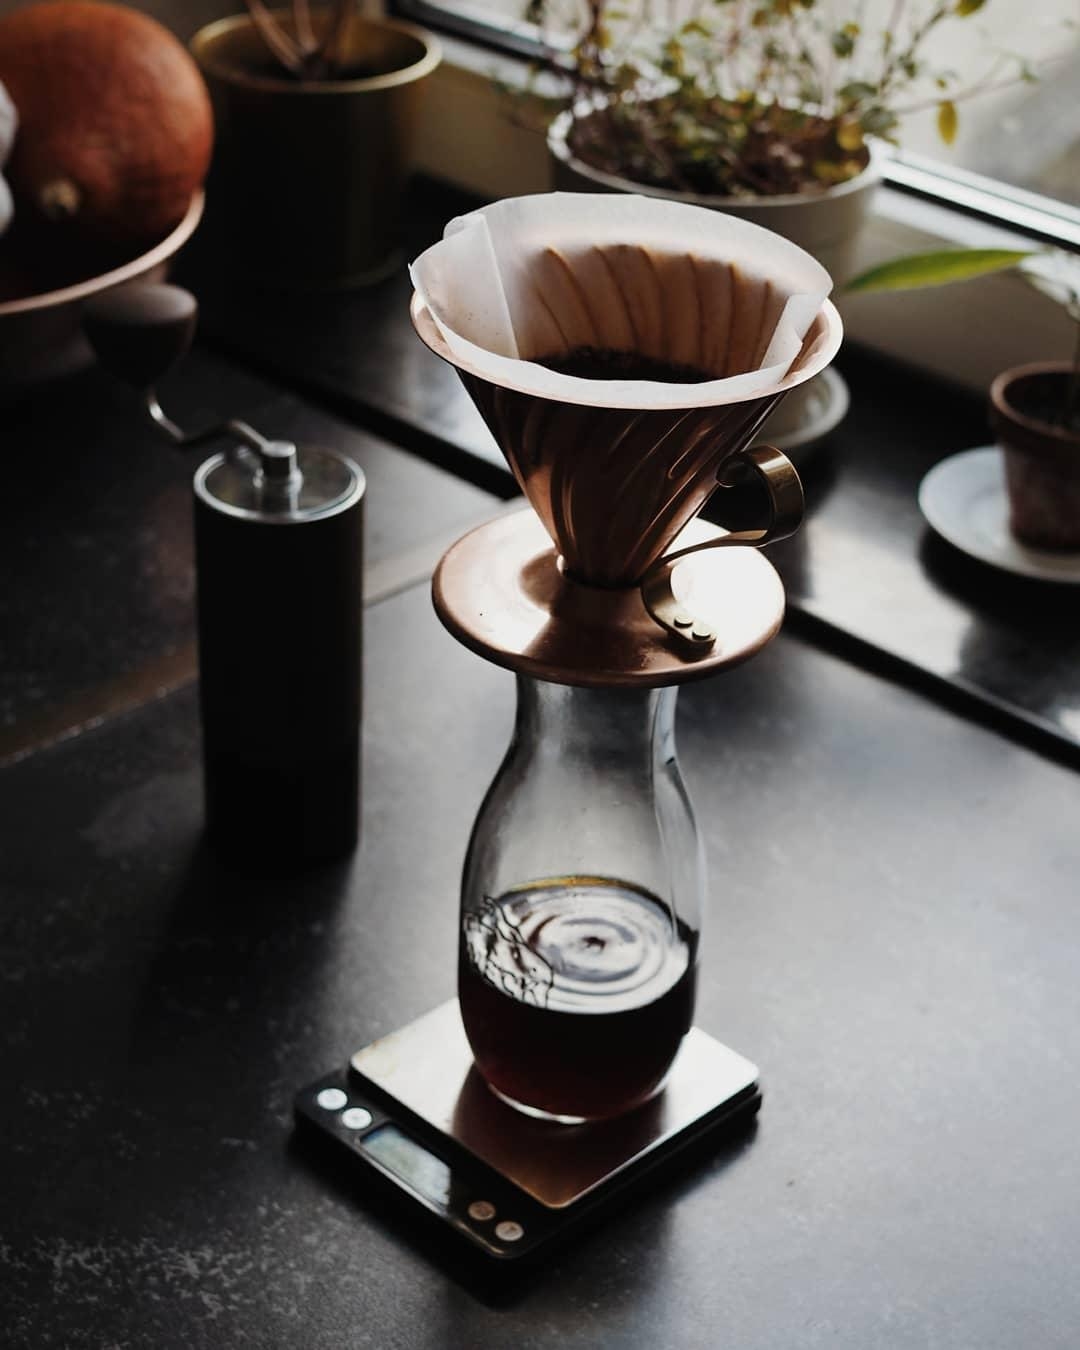 Erstmal einen frischen Kaffee. 

#coffee #kaffee #goodmorning #autumnvibes #kupfer #kitchen #details 